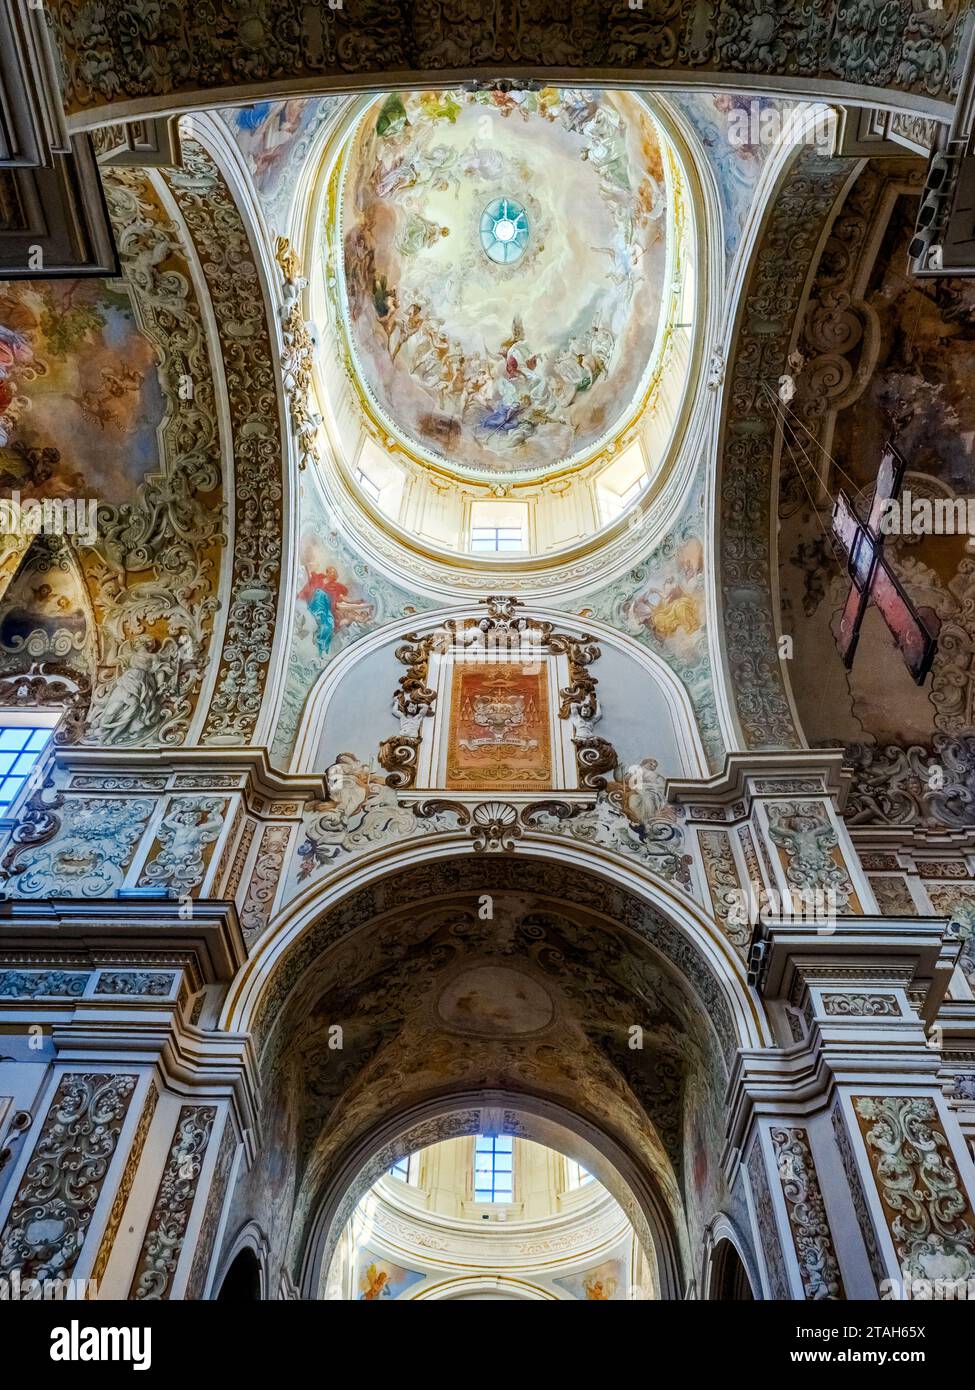 Basilica Cattedrale del Santissimo Salvatore in Mazara del Vallo - Trapani province, Sicily, Italy Stock Photo